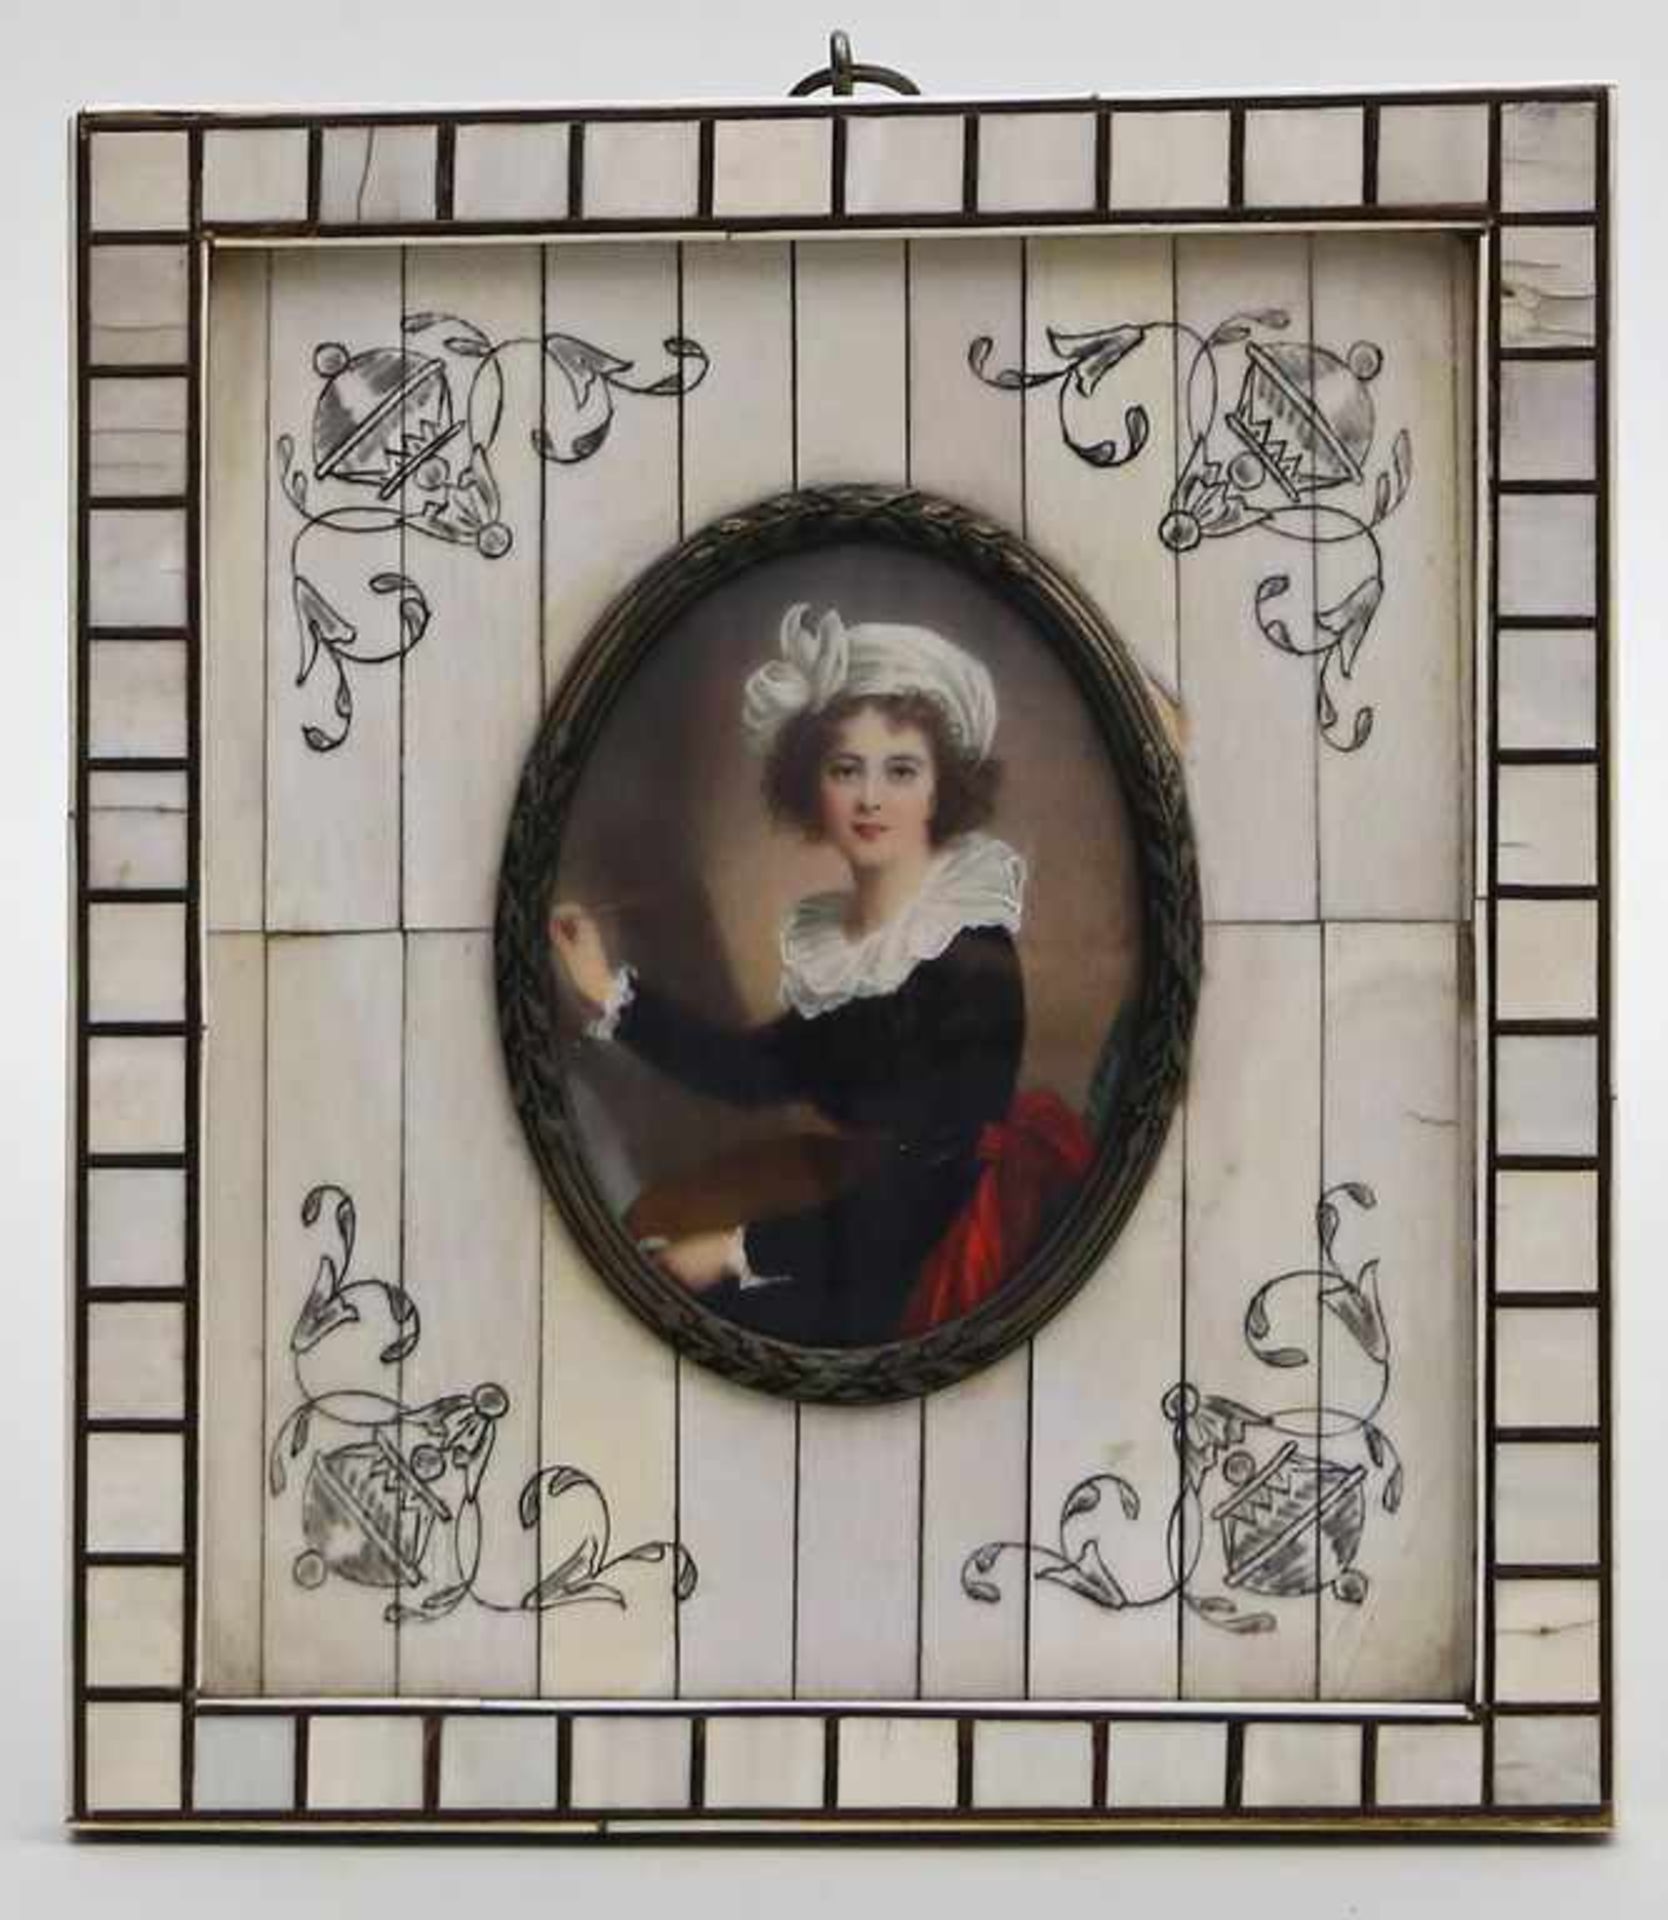 Miniaturist.Darstellung der französischen Malerin Marie Louise Élisabeth Vigée-Lebrun. Gouache/